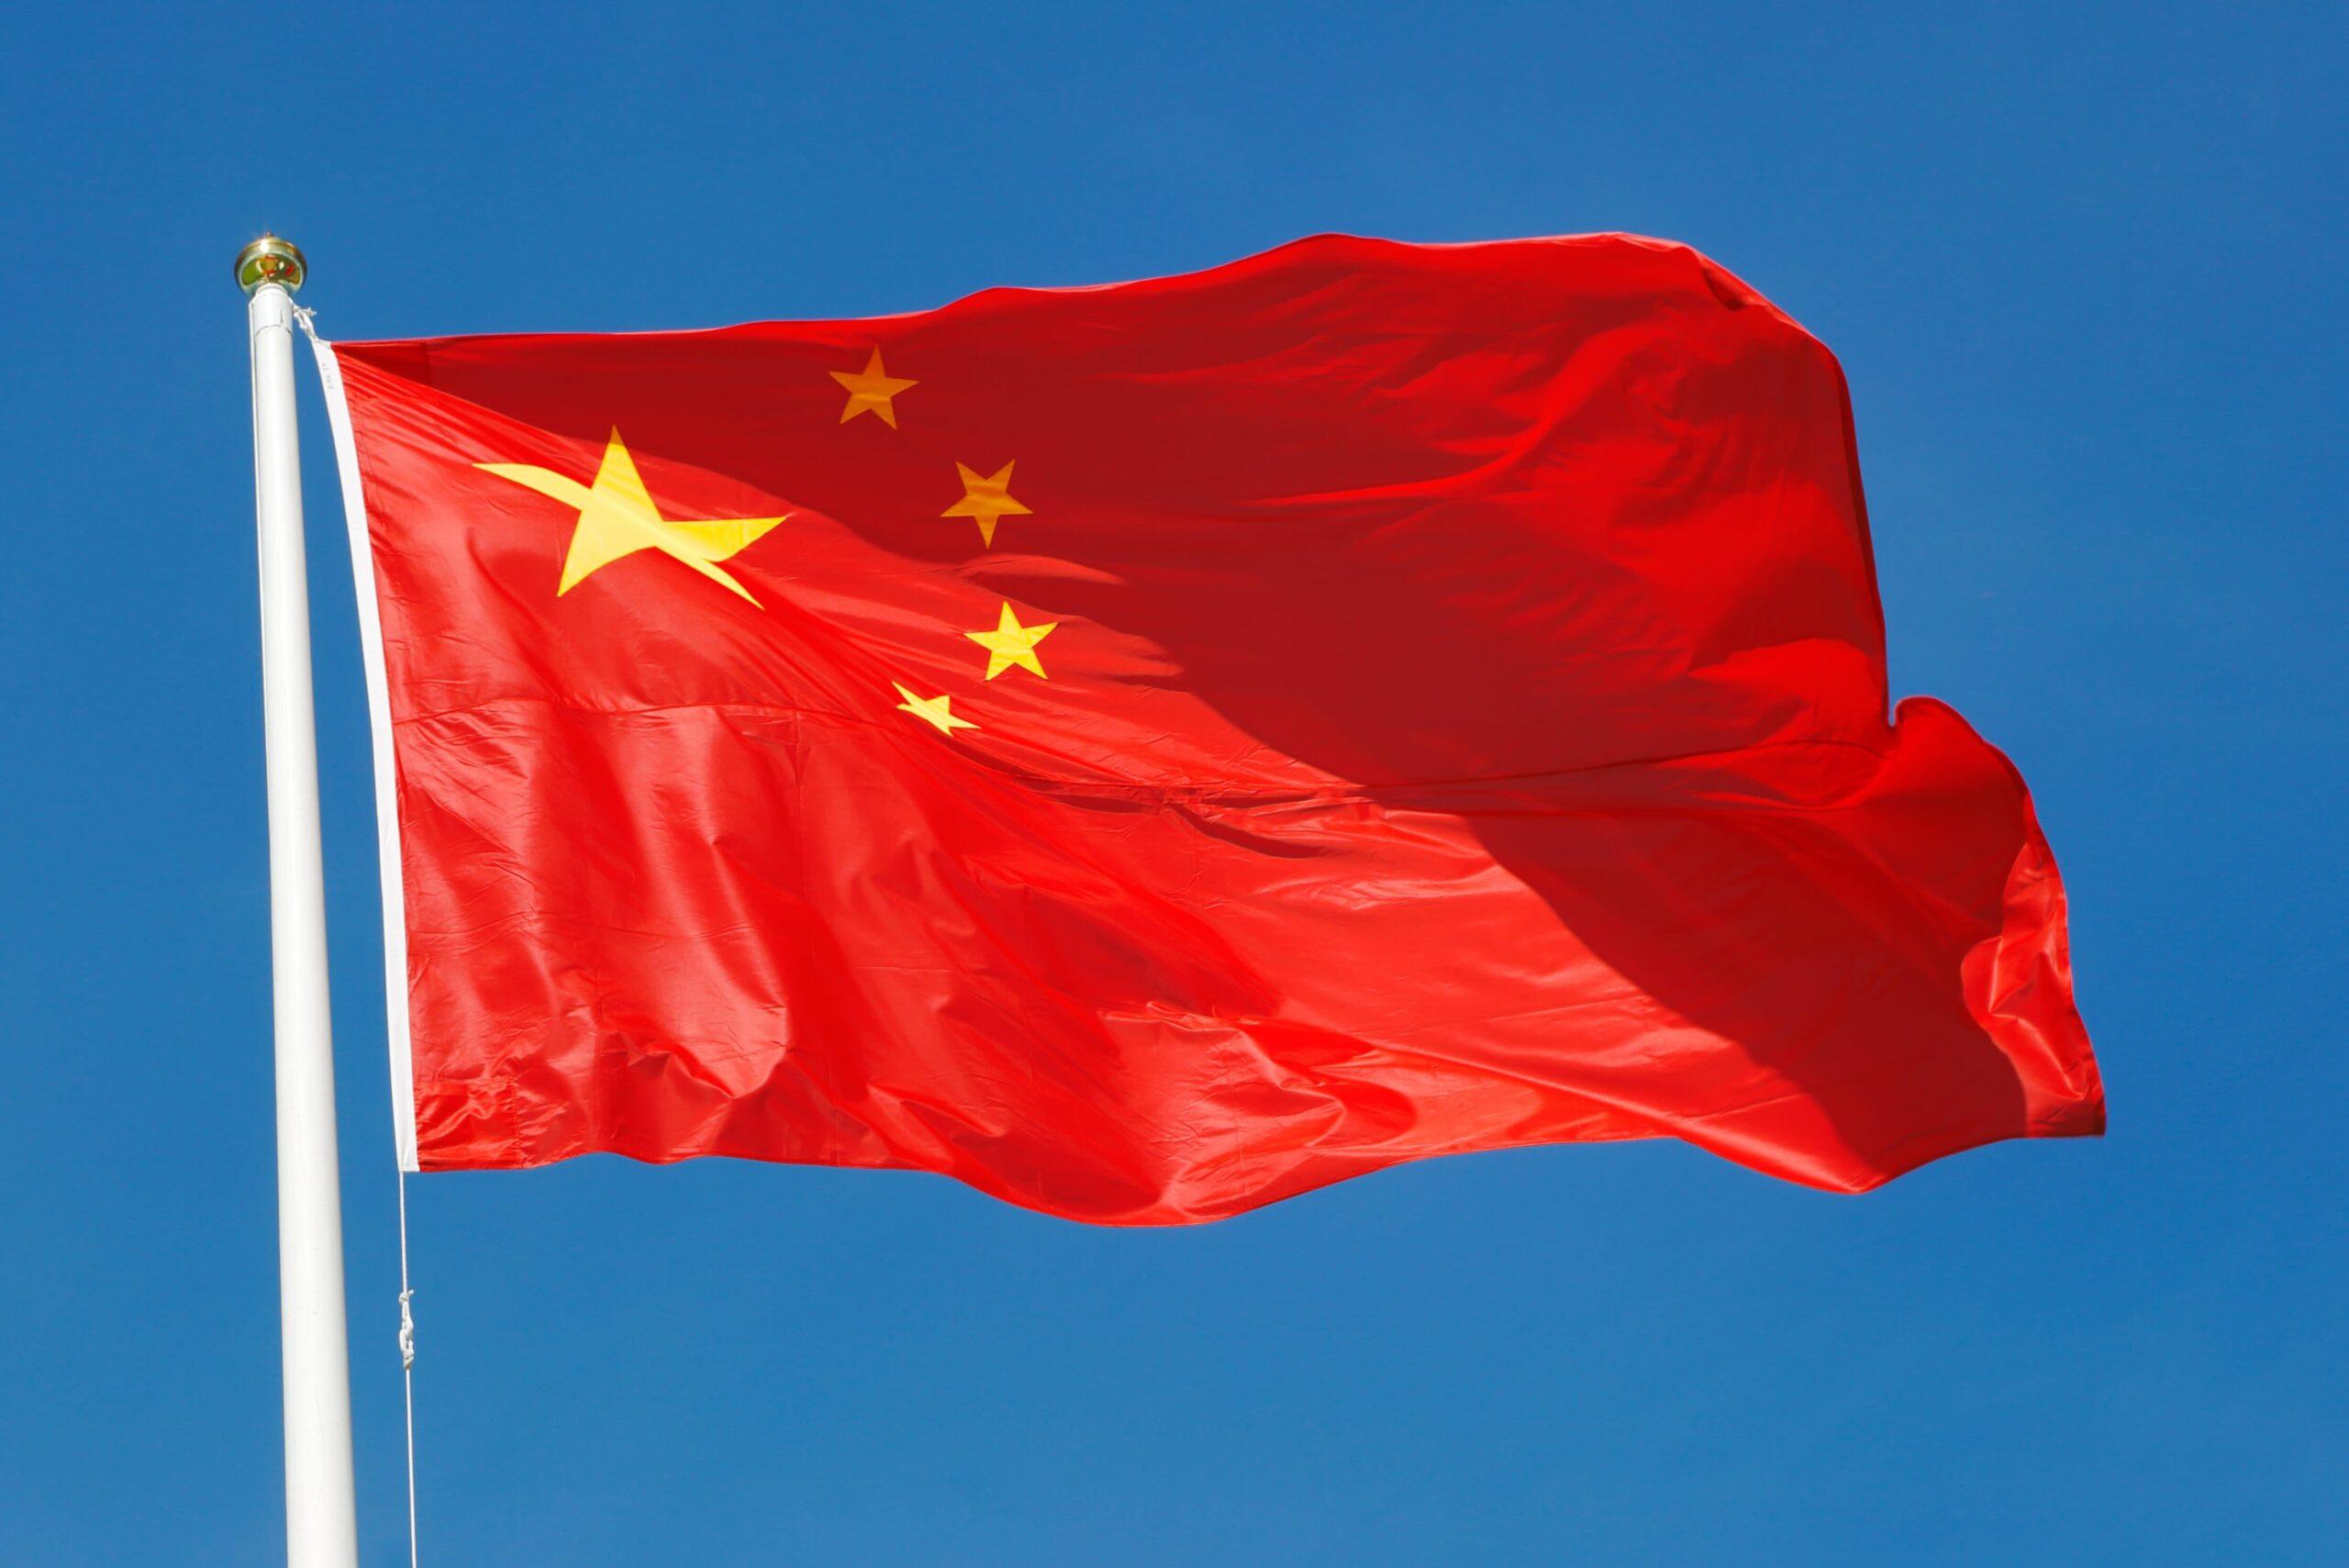 بكين تفرض عقوبات على شركتين أمريكيتين في إطار مبيعات أسلحة إلى تايوان